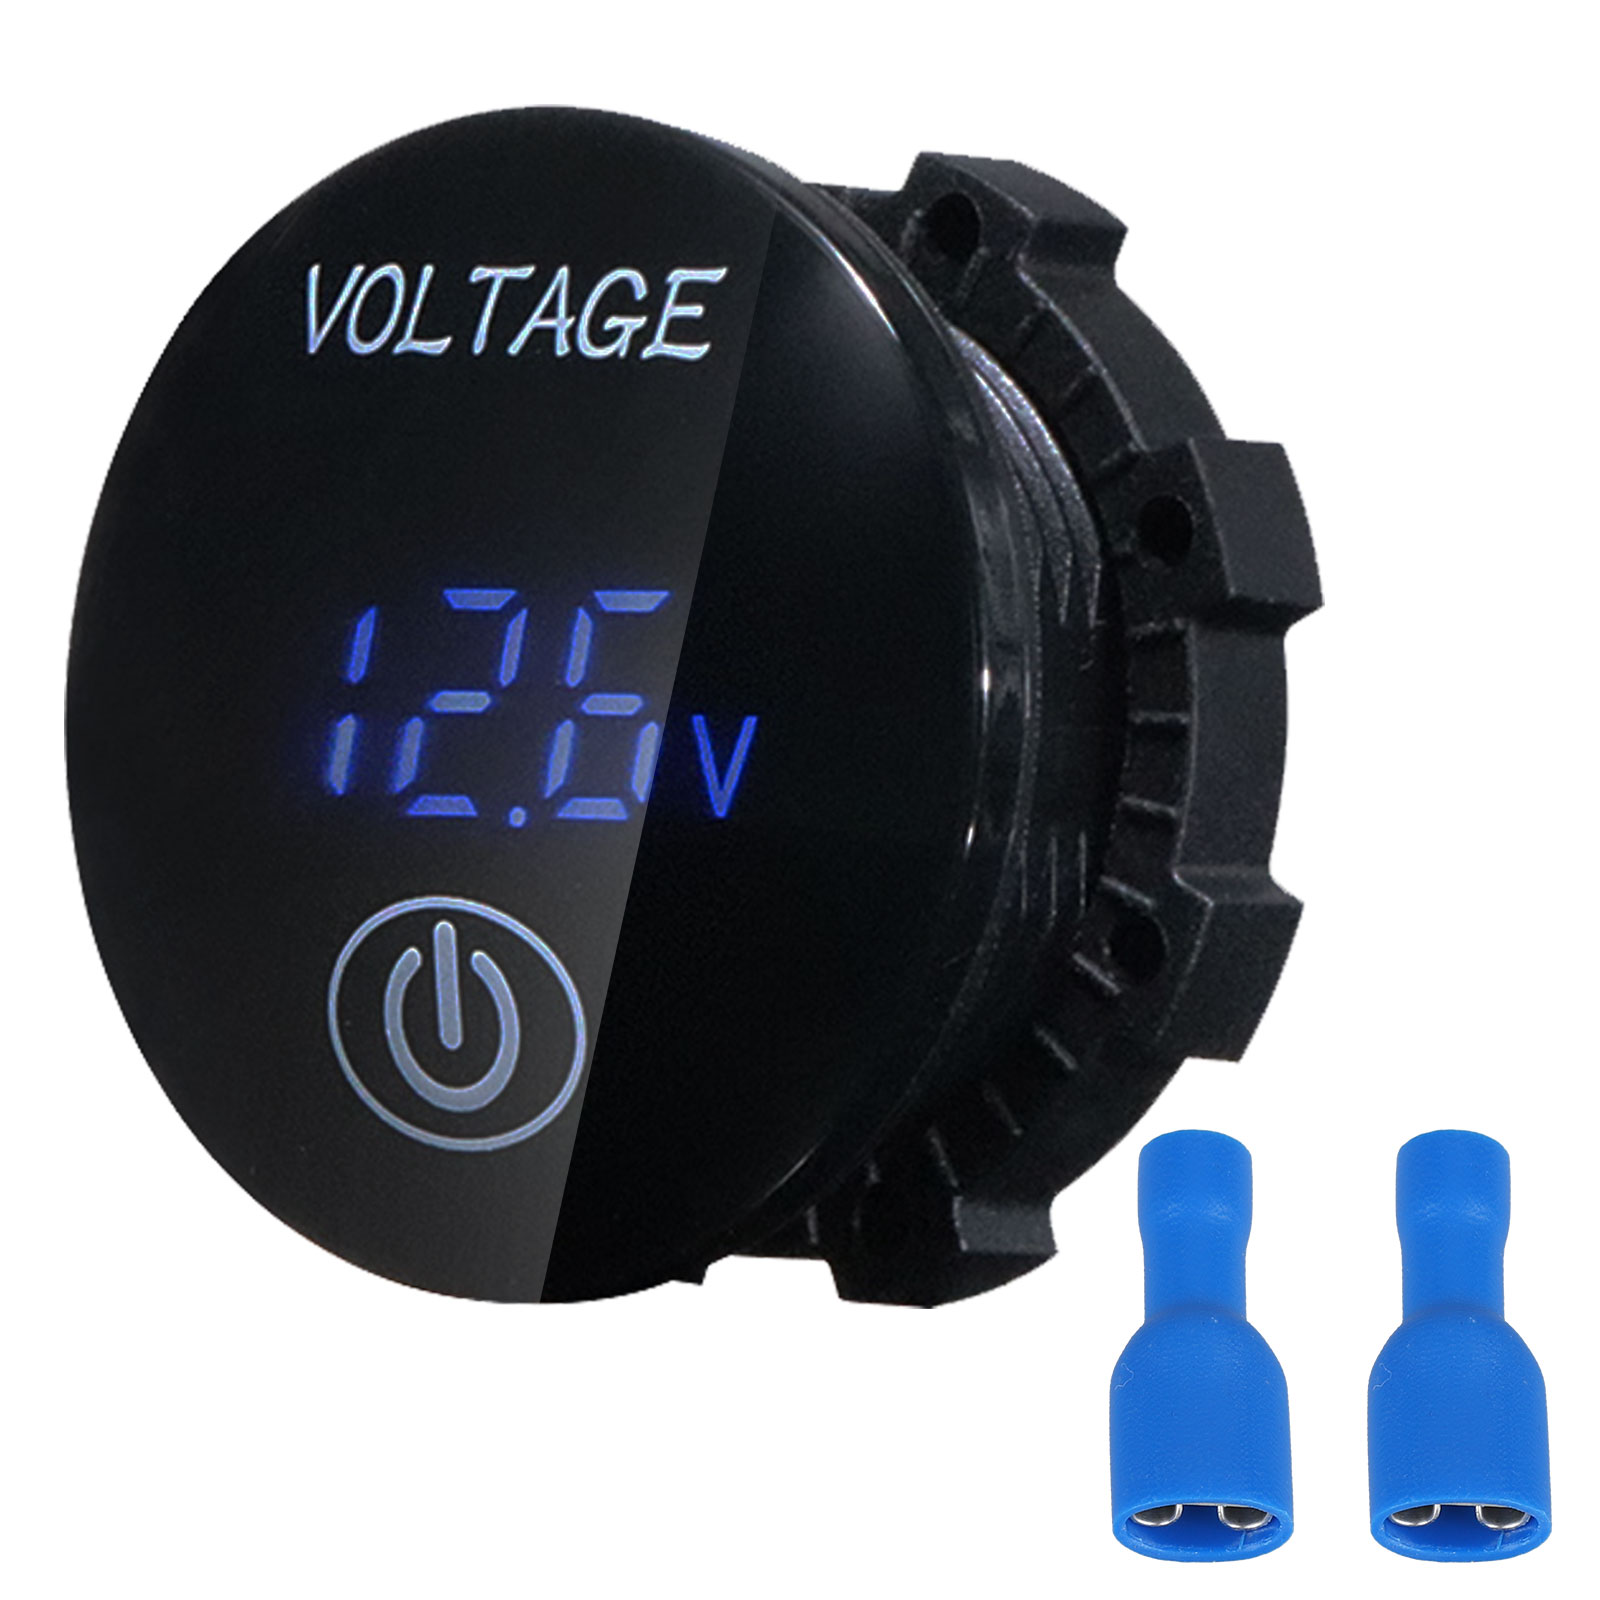 12V-24V Car Marine Motorcycle LED Digital Voltmeter Voltage Meter Battery Gauge